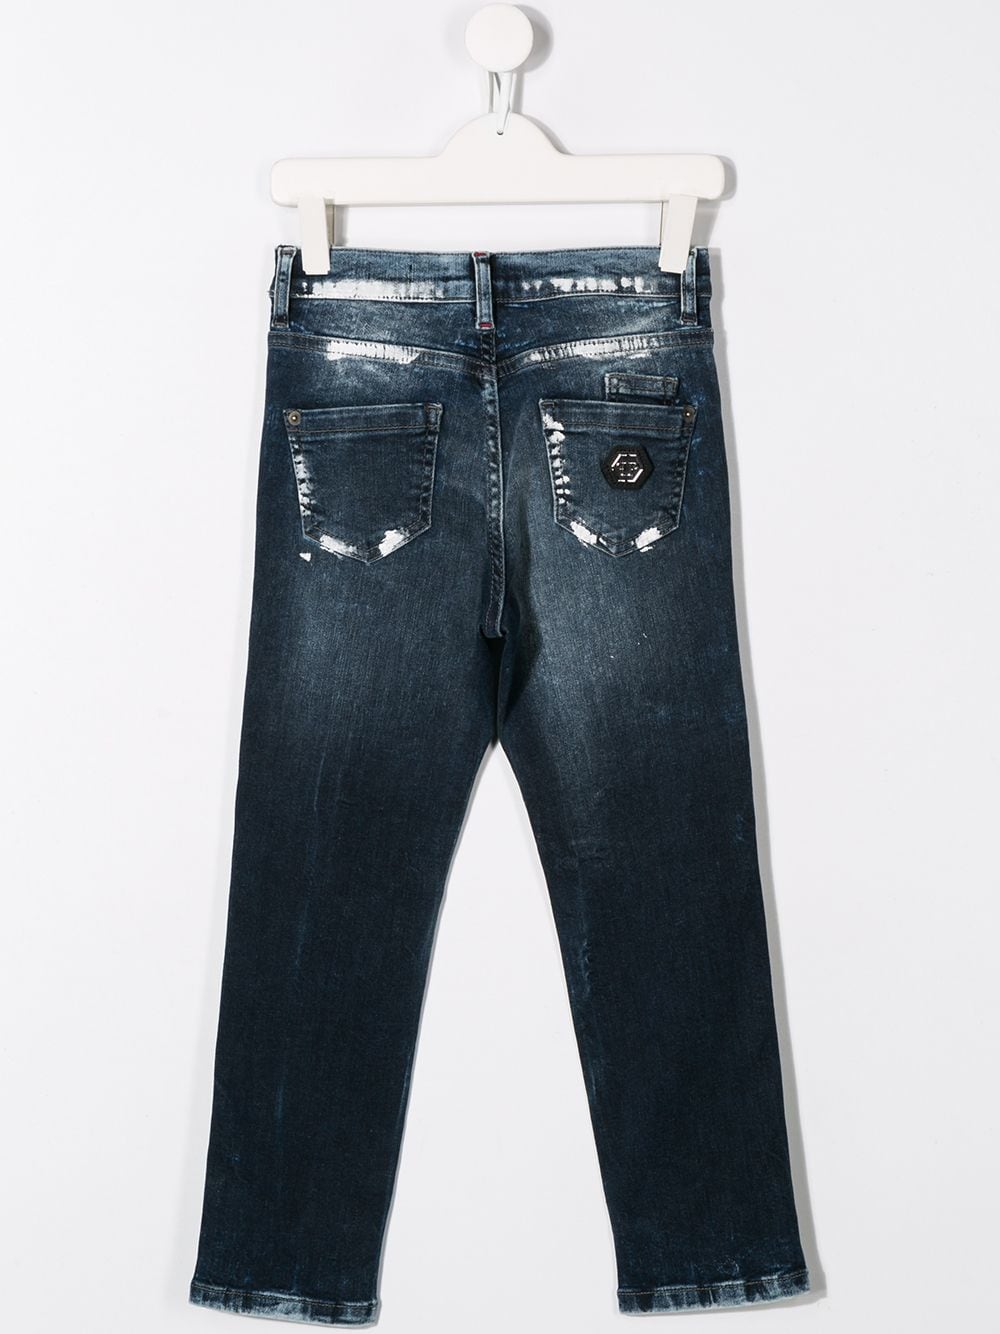 фото Philipp plein junior джинсы с эффектом разбрызганной краски